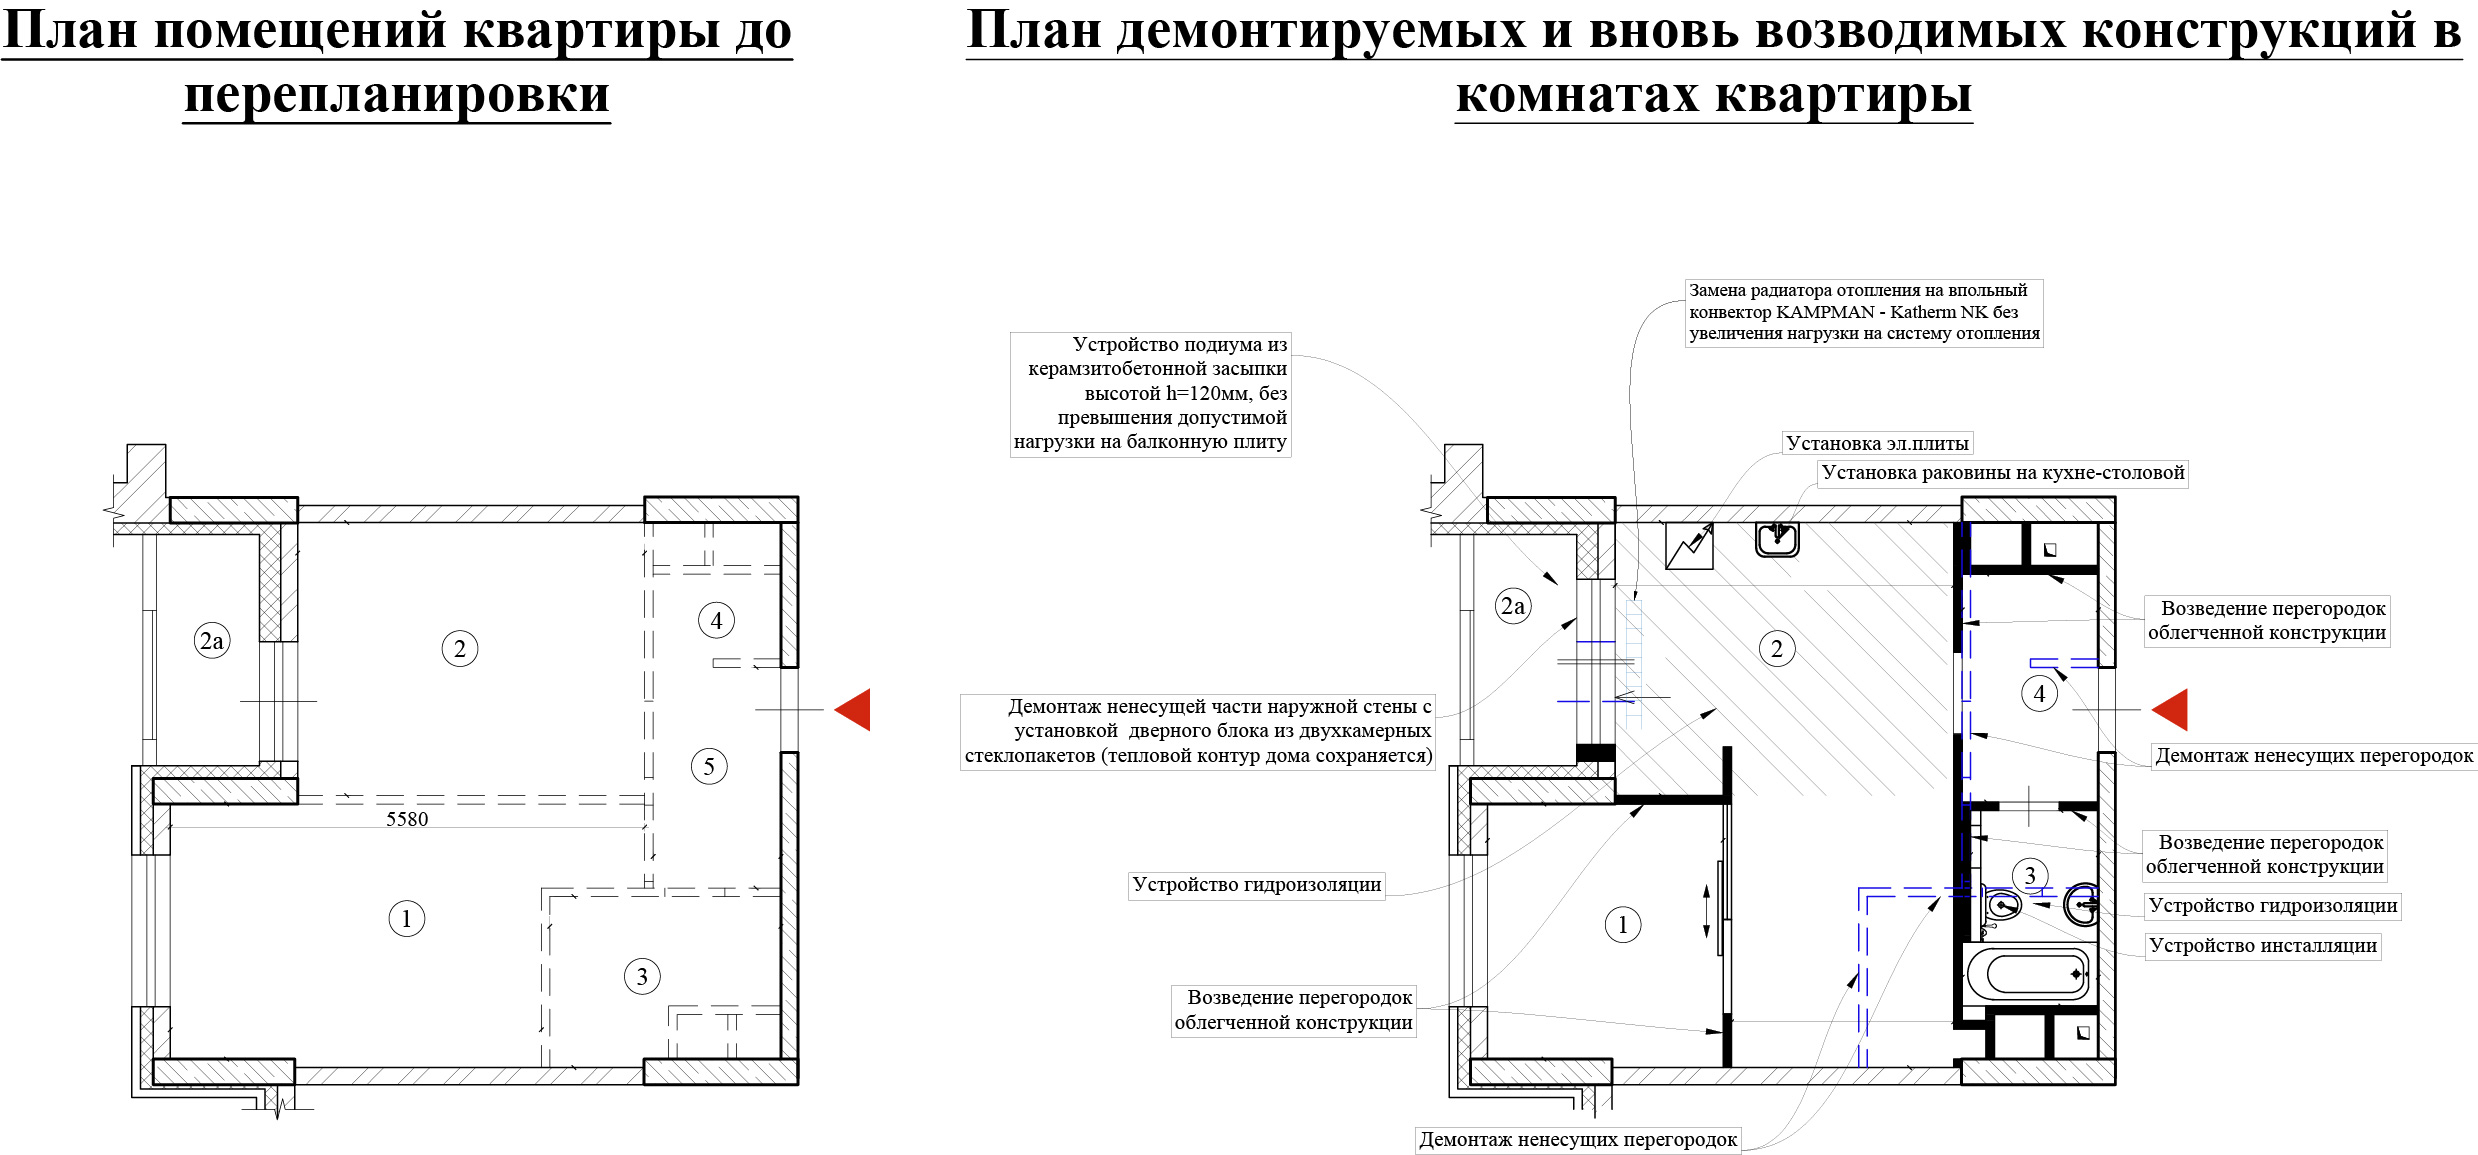 Пример проекта перепланировки для квартиры в монолитном доме ЖК «Династия»